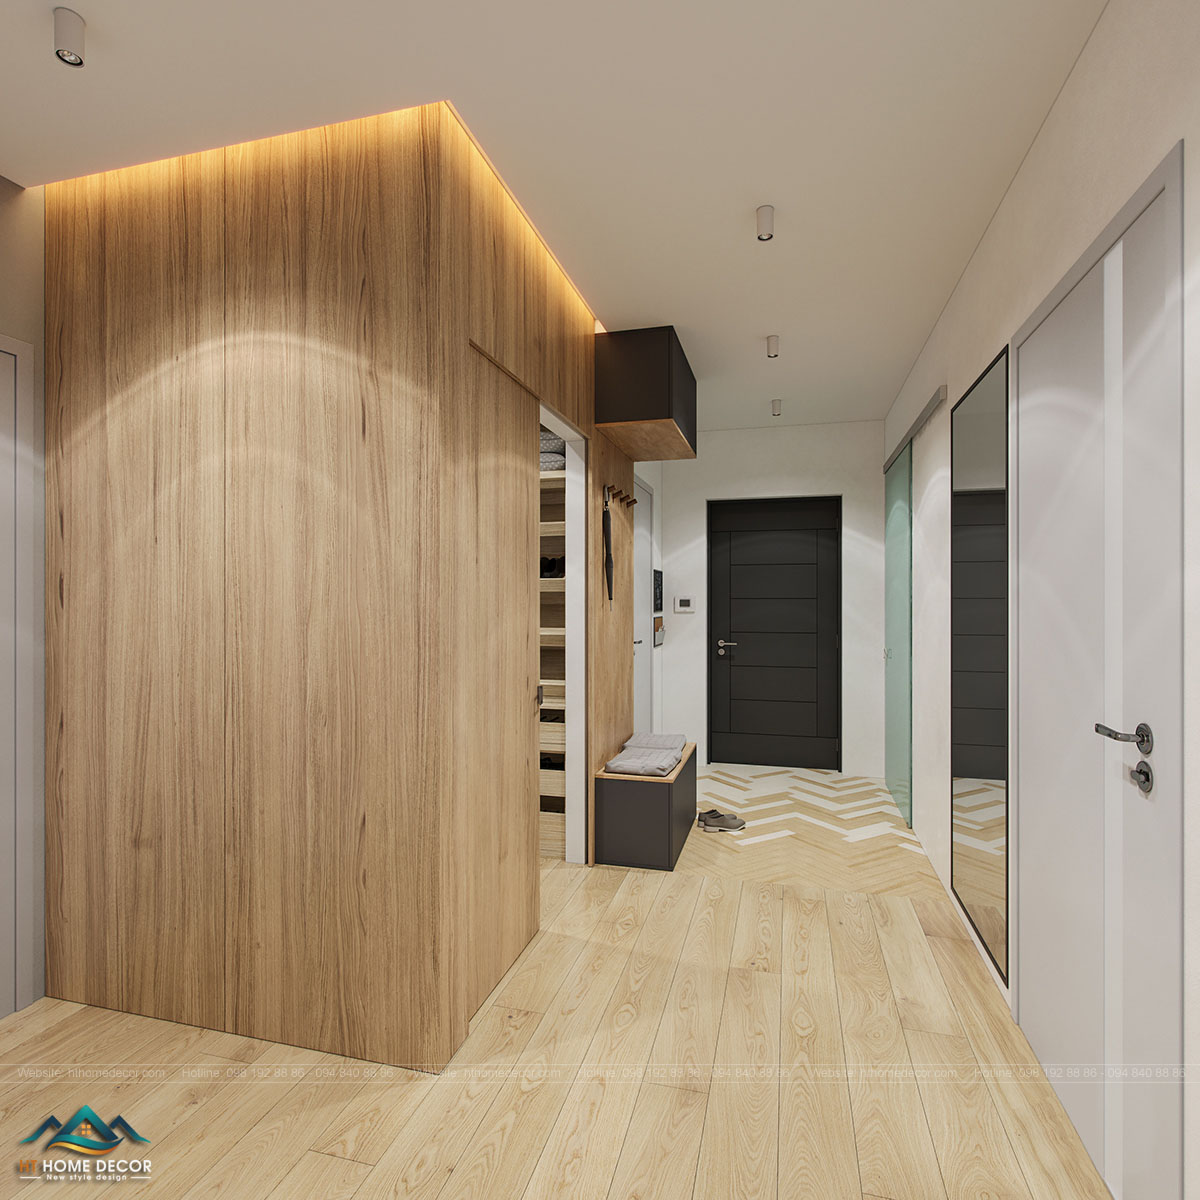 Gỗ rất được ưa chuộng cho không gian sống của căn hộ. Cả sàn và tường đều lót gỗ cho cảm giác trơn tru sạch sẽ.